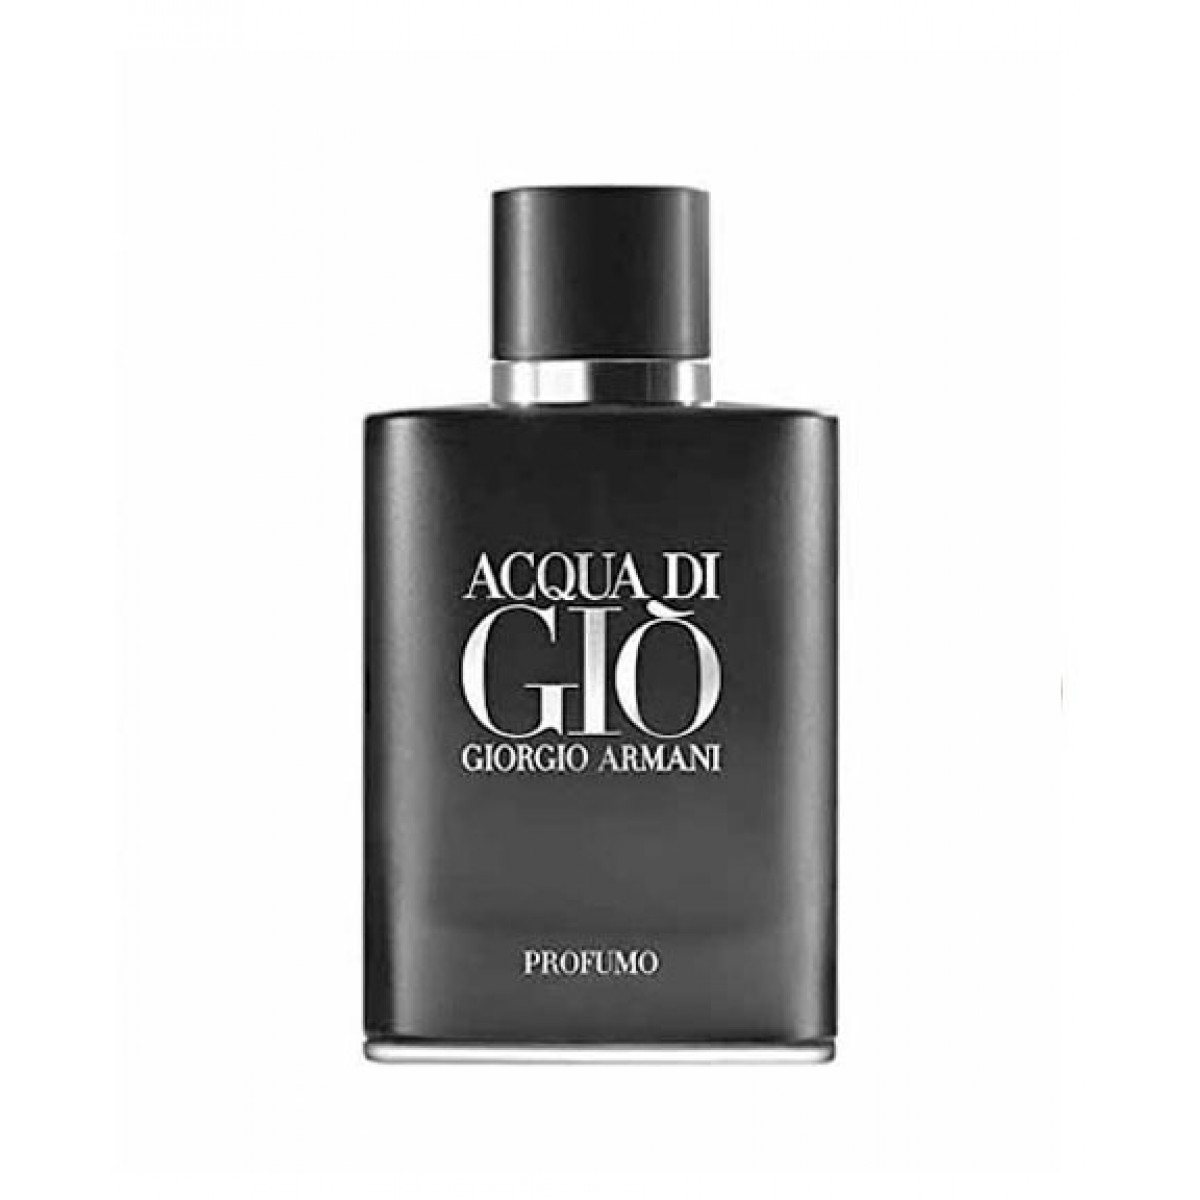 Giorgio Armani Acqua Di Gio Profumo for Men EDP (5ml, 10ml, 20ml, 75ml